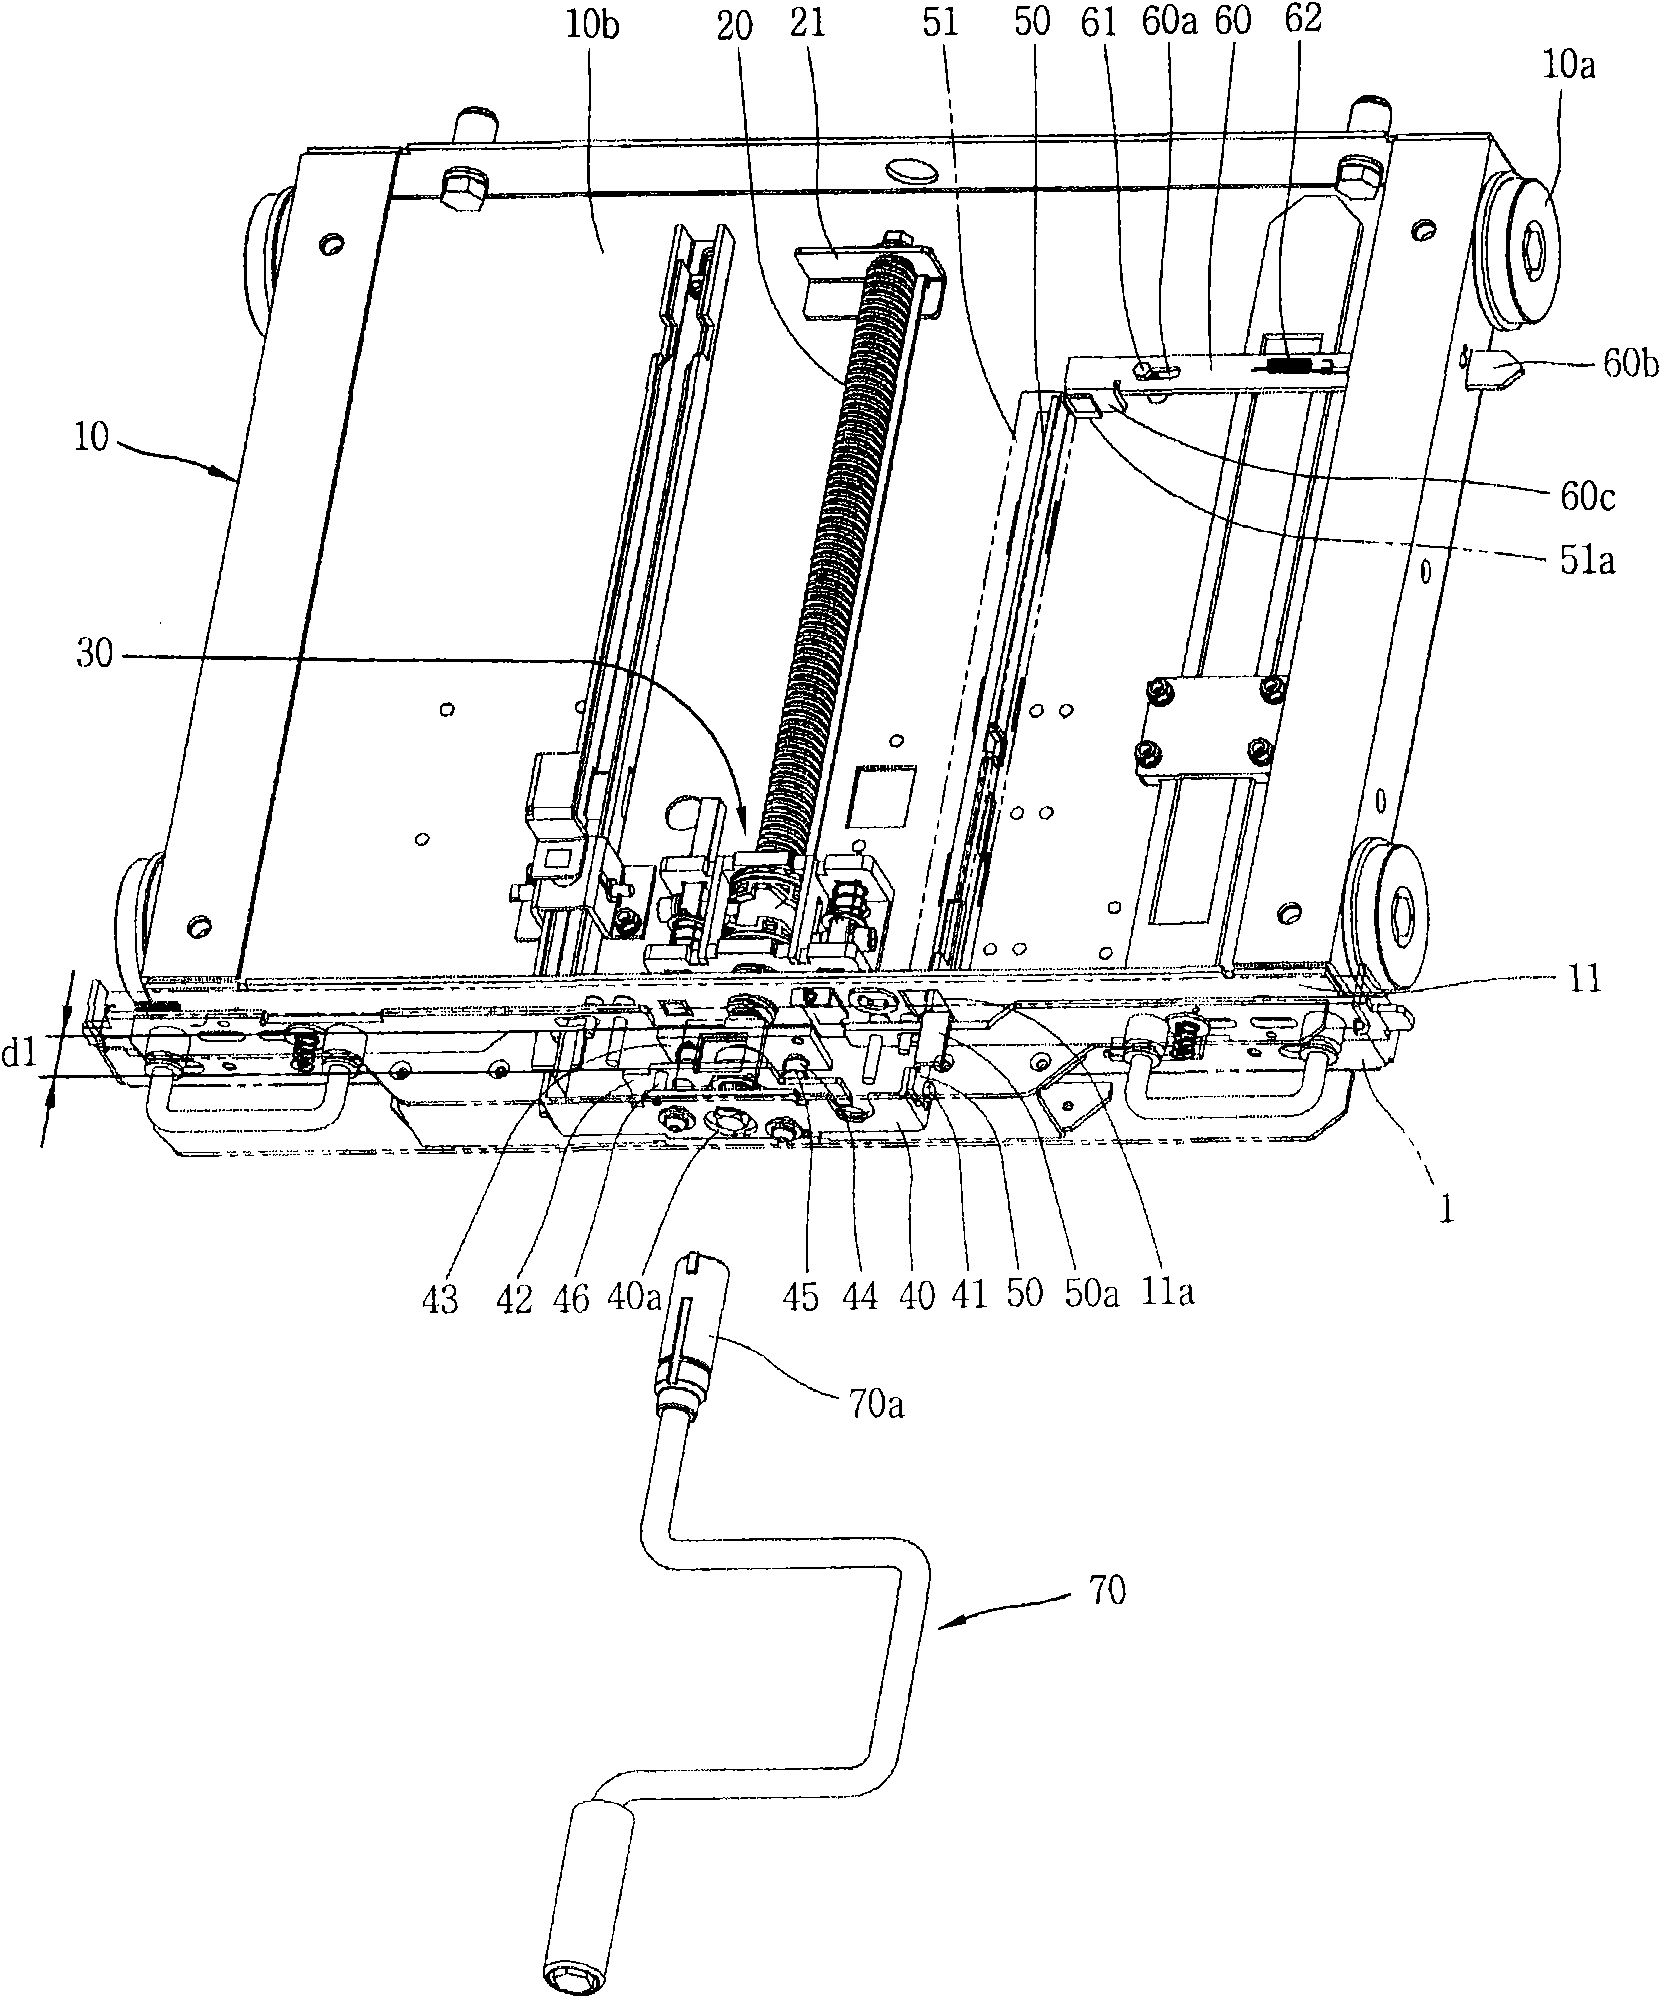 Interlock apparatus of ground switch for vacuum circuit breaker